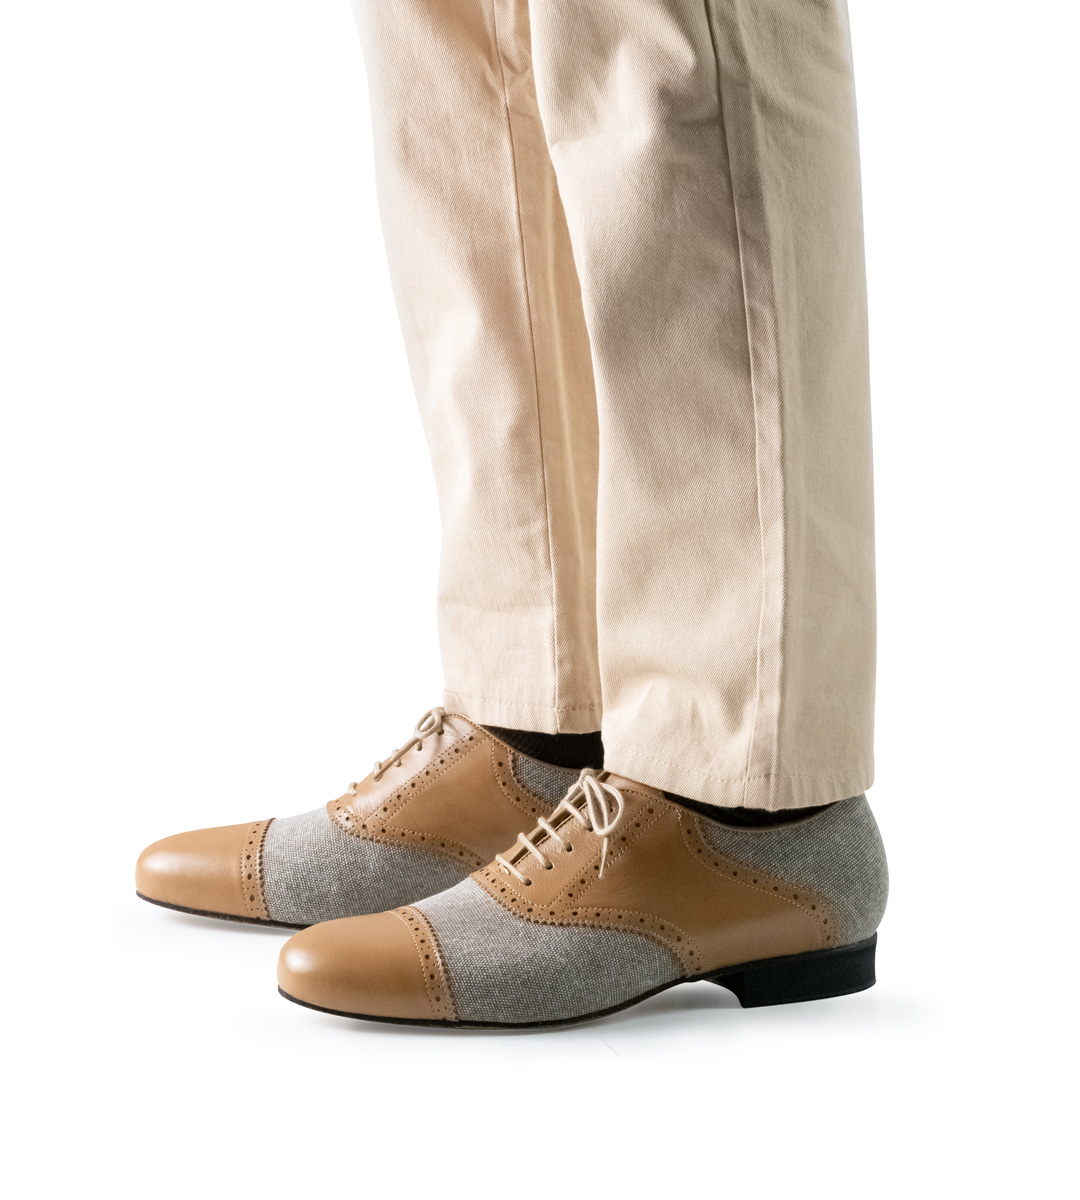 2 cm high Nueva Epoca men's dance shoe in combination with beige trousers